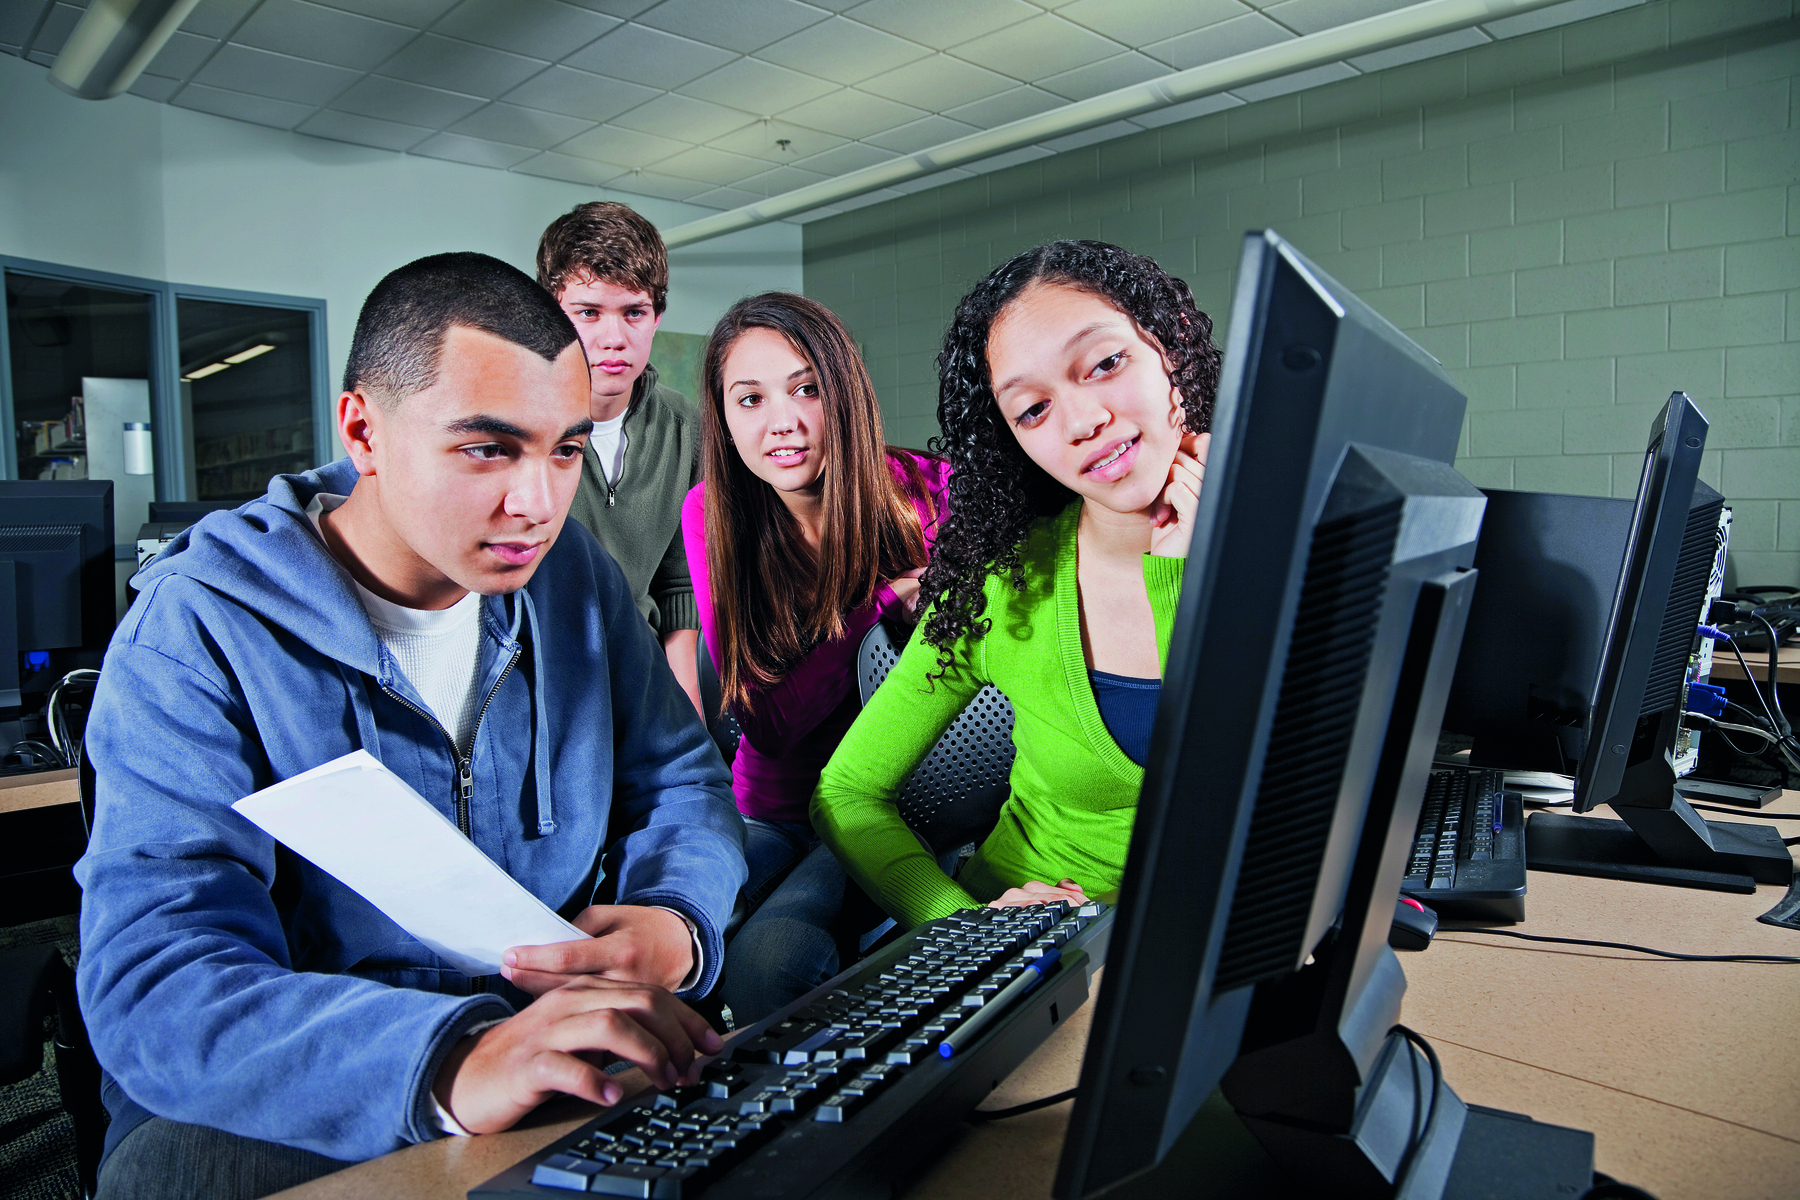 Fotografia. Um grupo de quatro jovens estão juntos e olhando para a tela de um computador. Um deles está mais à frente e digita no teclado, enquanto segura uma folha em uma das mãos. Ao lado dele, os demais olham atentamente. Eles vestem roupas azuis, verdes, rosa e cinza.